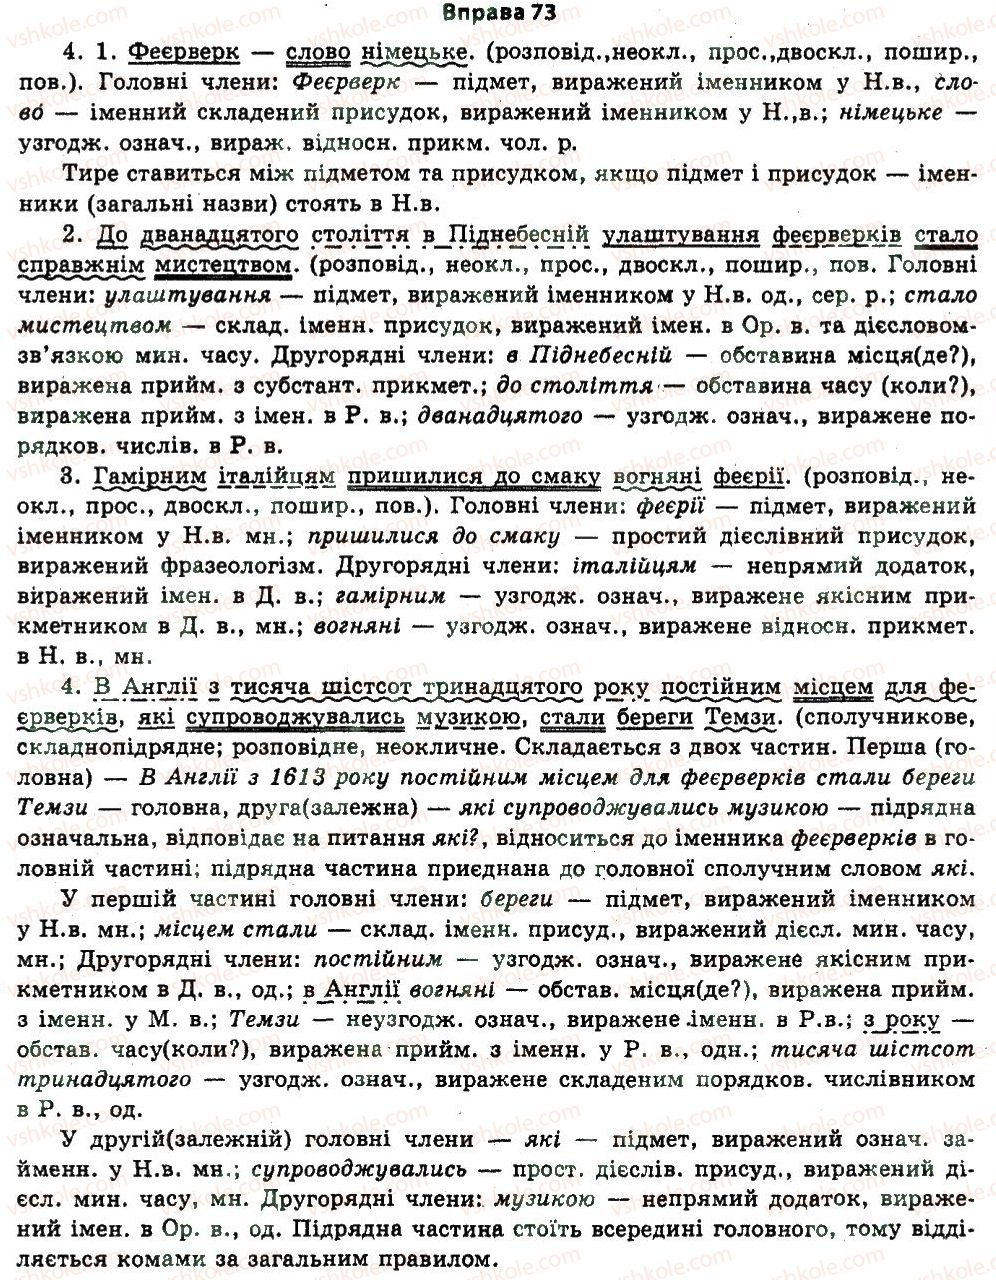 11-ukrayinska-mova-nv-bondarenko-2011--vstup-2-tochnist-movlennya-73.jpg